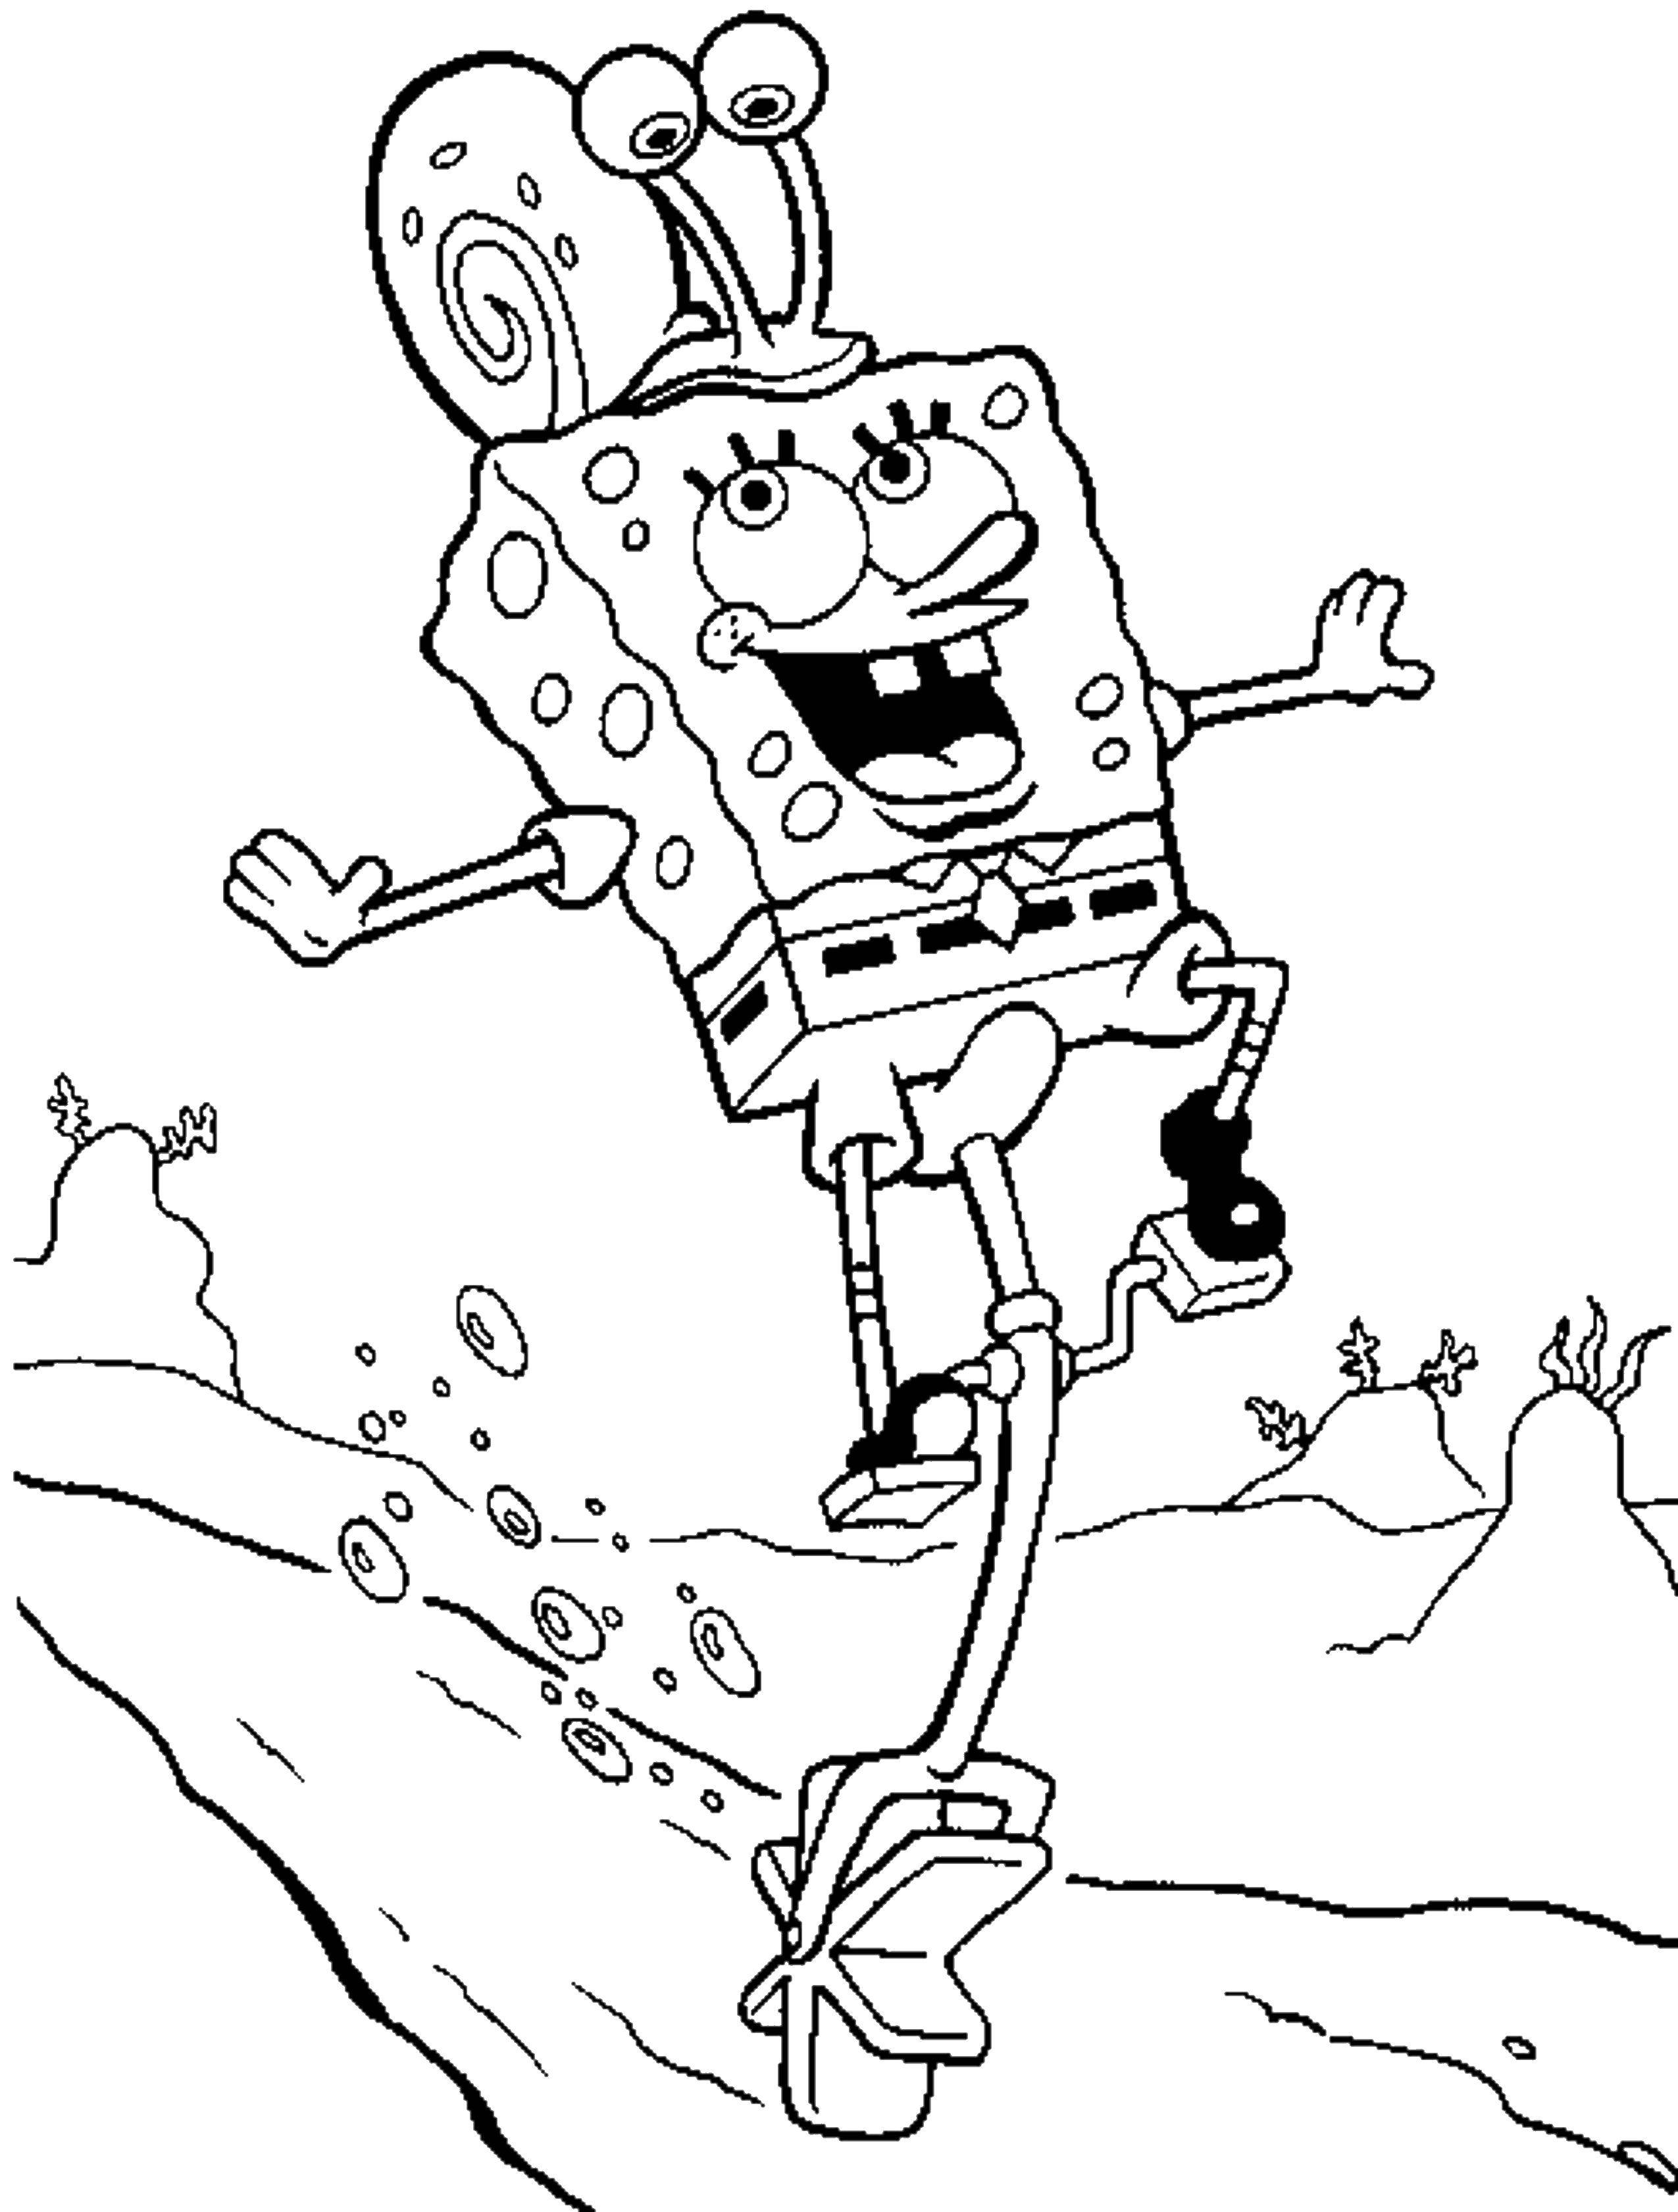 Coloring Spongebob and Gary. Category Spongebob. Tags:  The spongebob, Gary, cartoons.